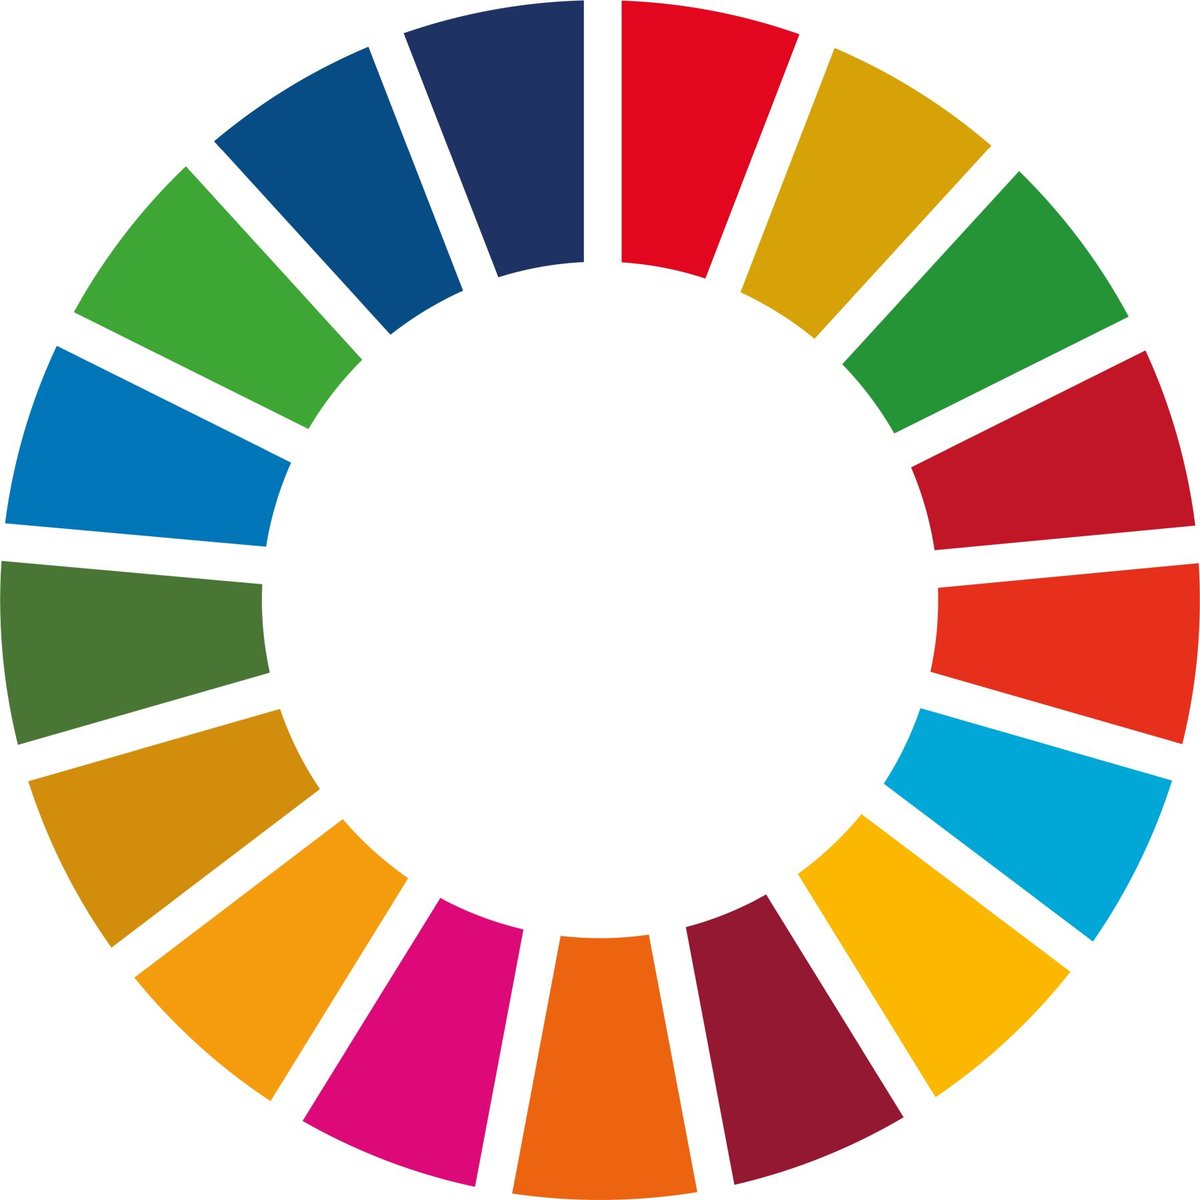 Kreis mit einzelnen, farbigen Elementen die die SDG's darstellen.